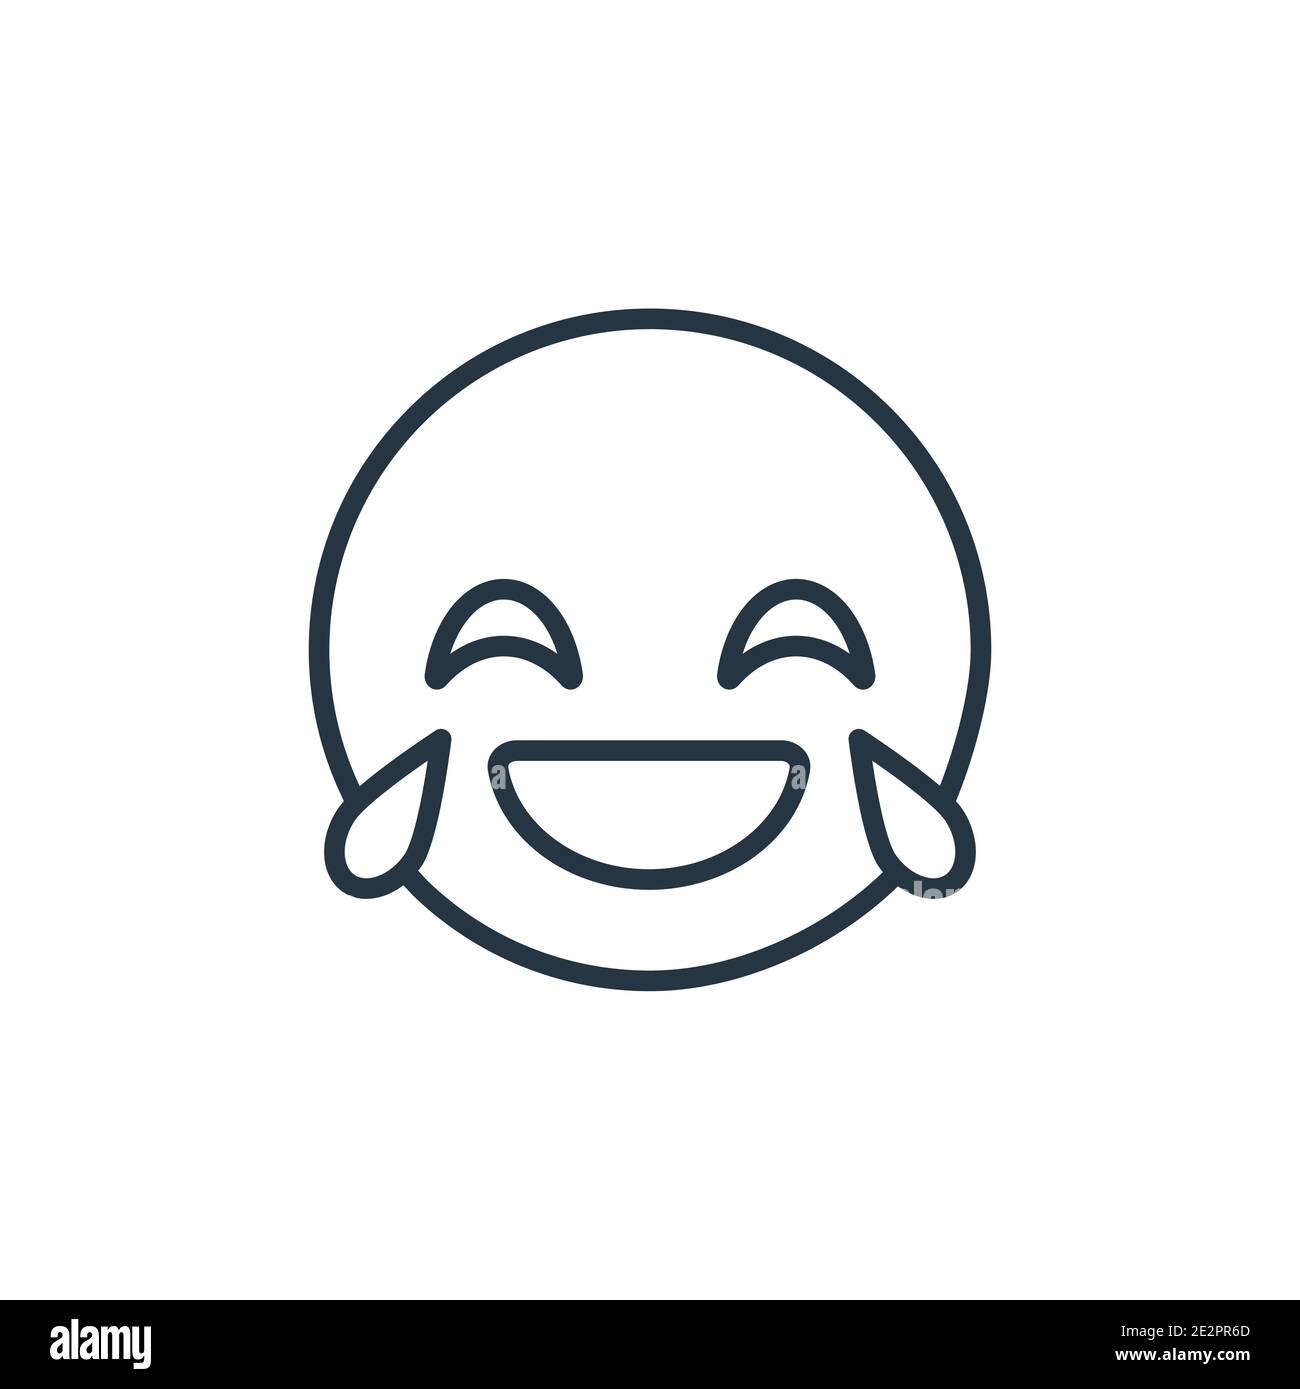 Icône de vecteur de contour emoji riant. Une fine ligne noire riant emoji icône, vecteur plat illustration d'élément simple de l'emoji concept modifiable isolé Illustration de Vecteur